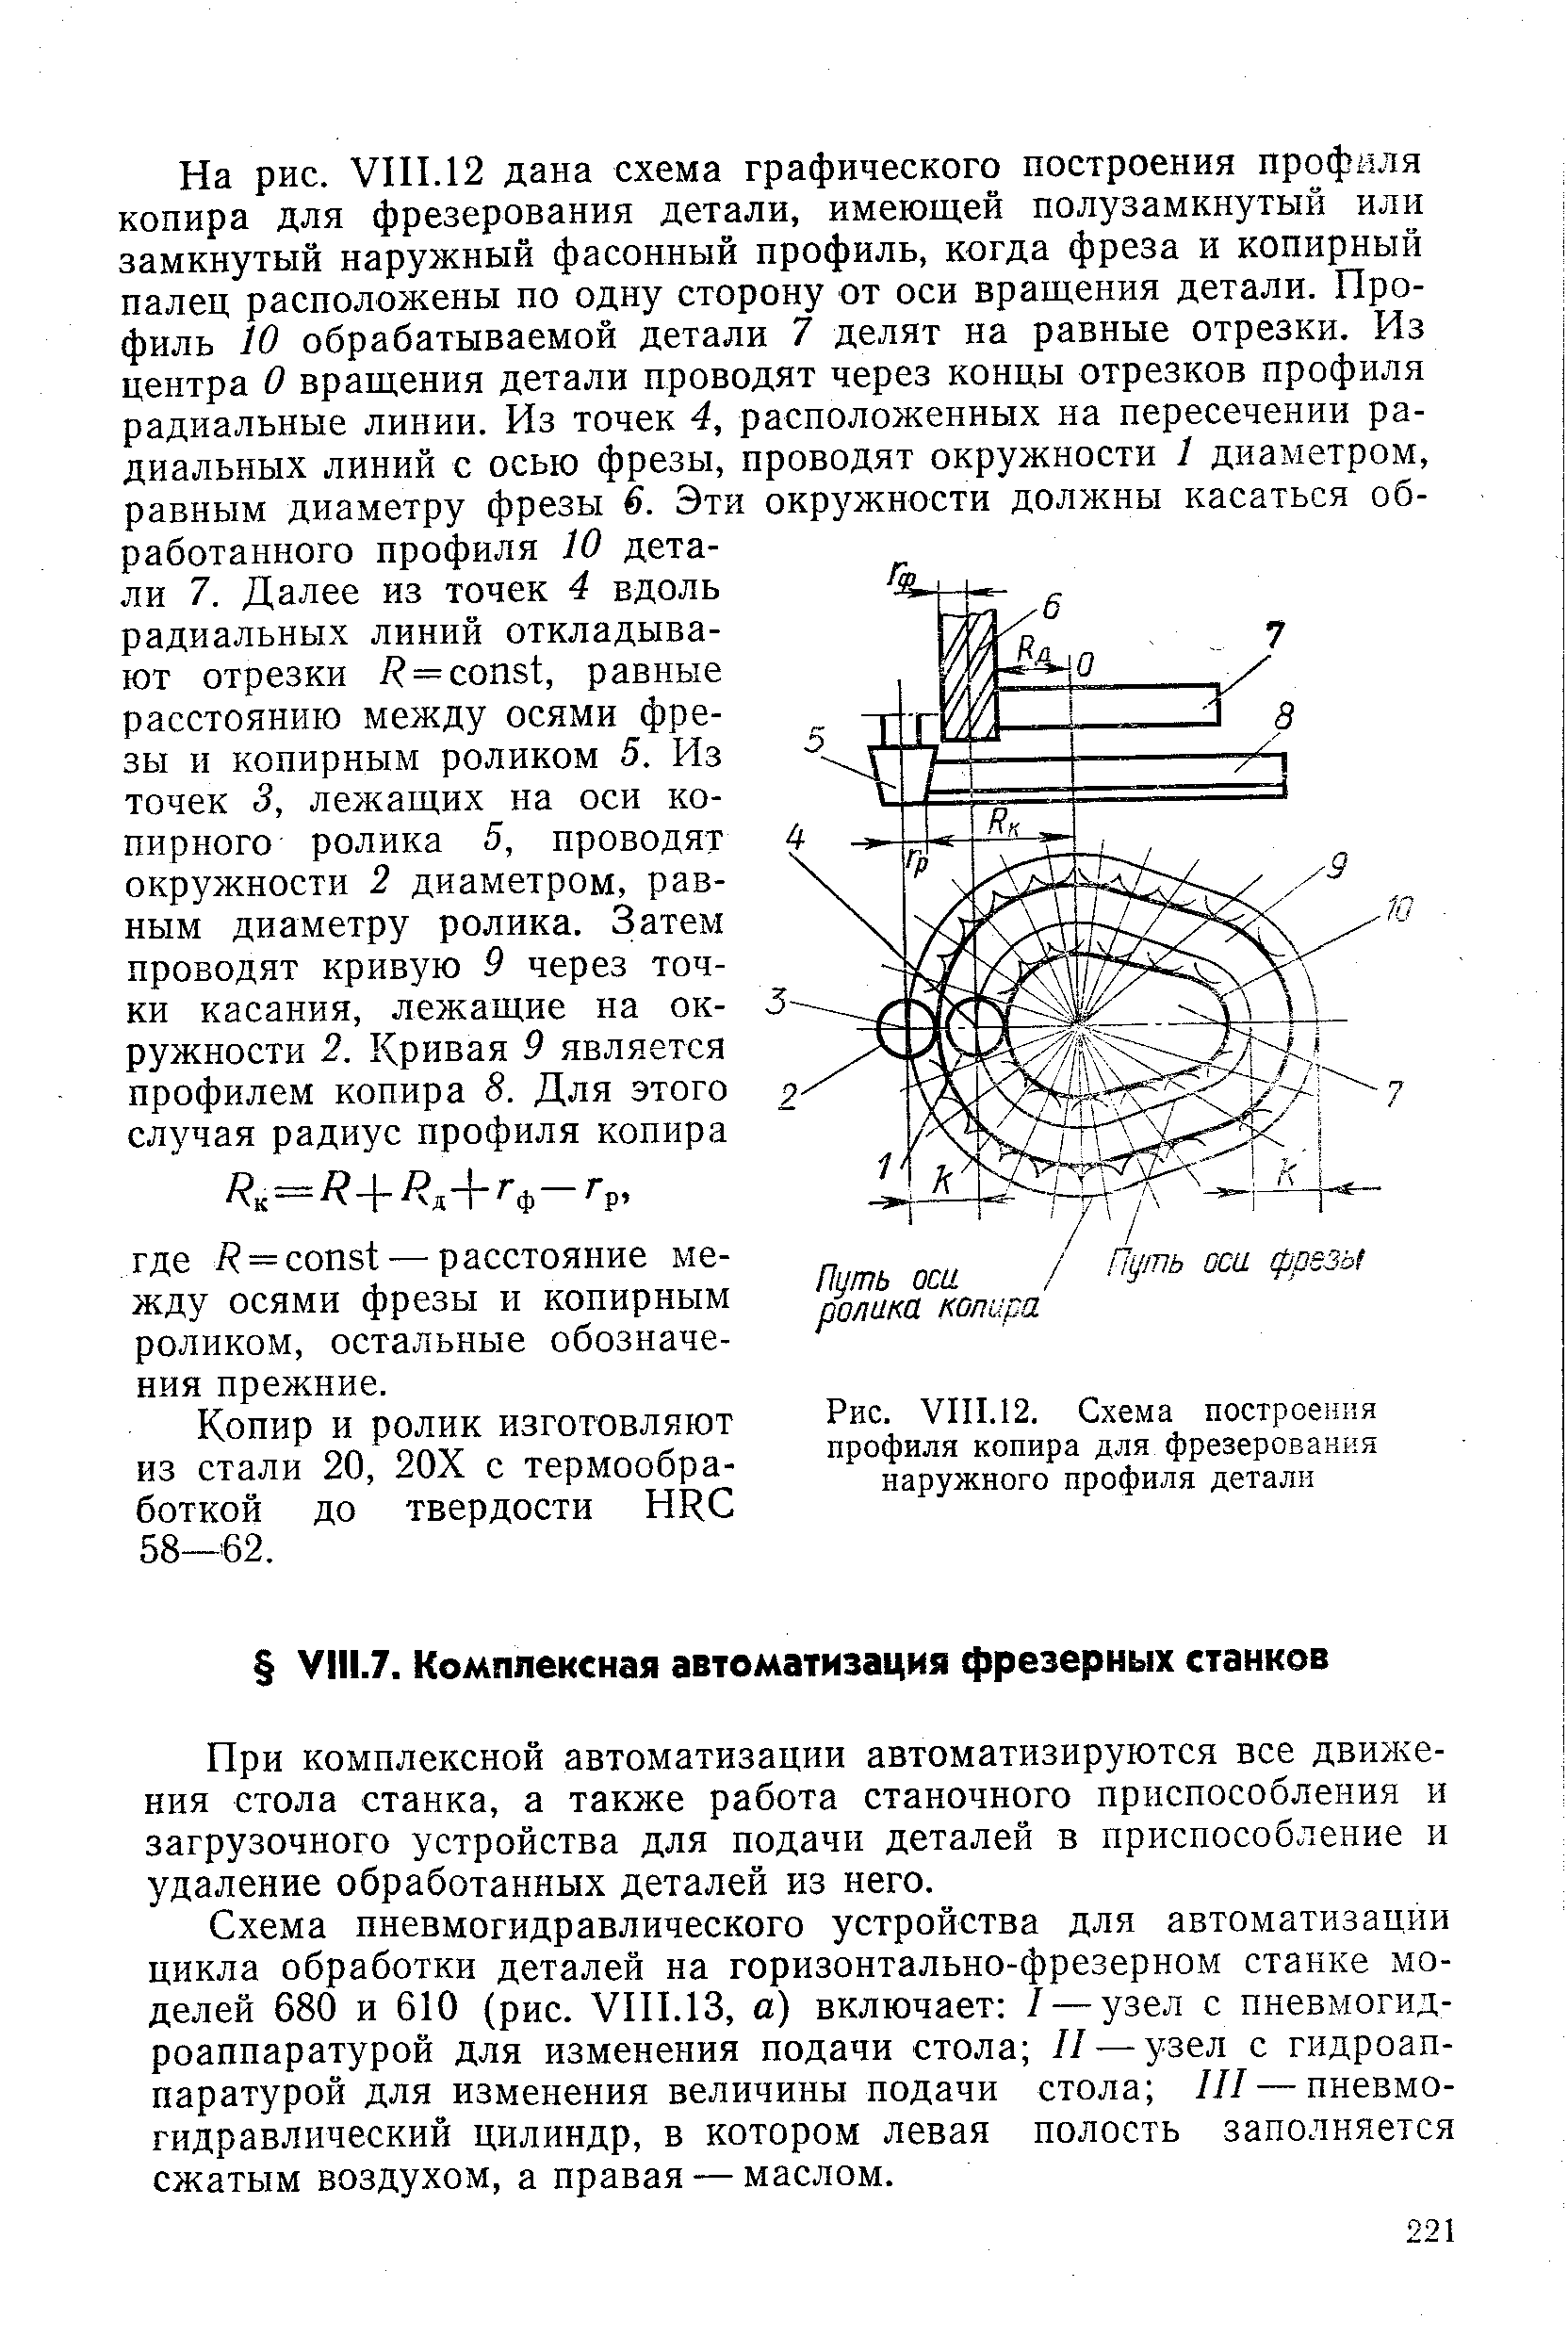 Рис. VIII.12. Схема построения профиля копира для фрезерования наружного профиля детали
